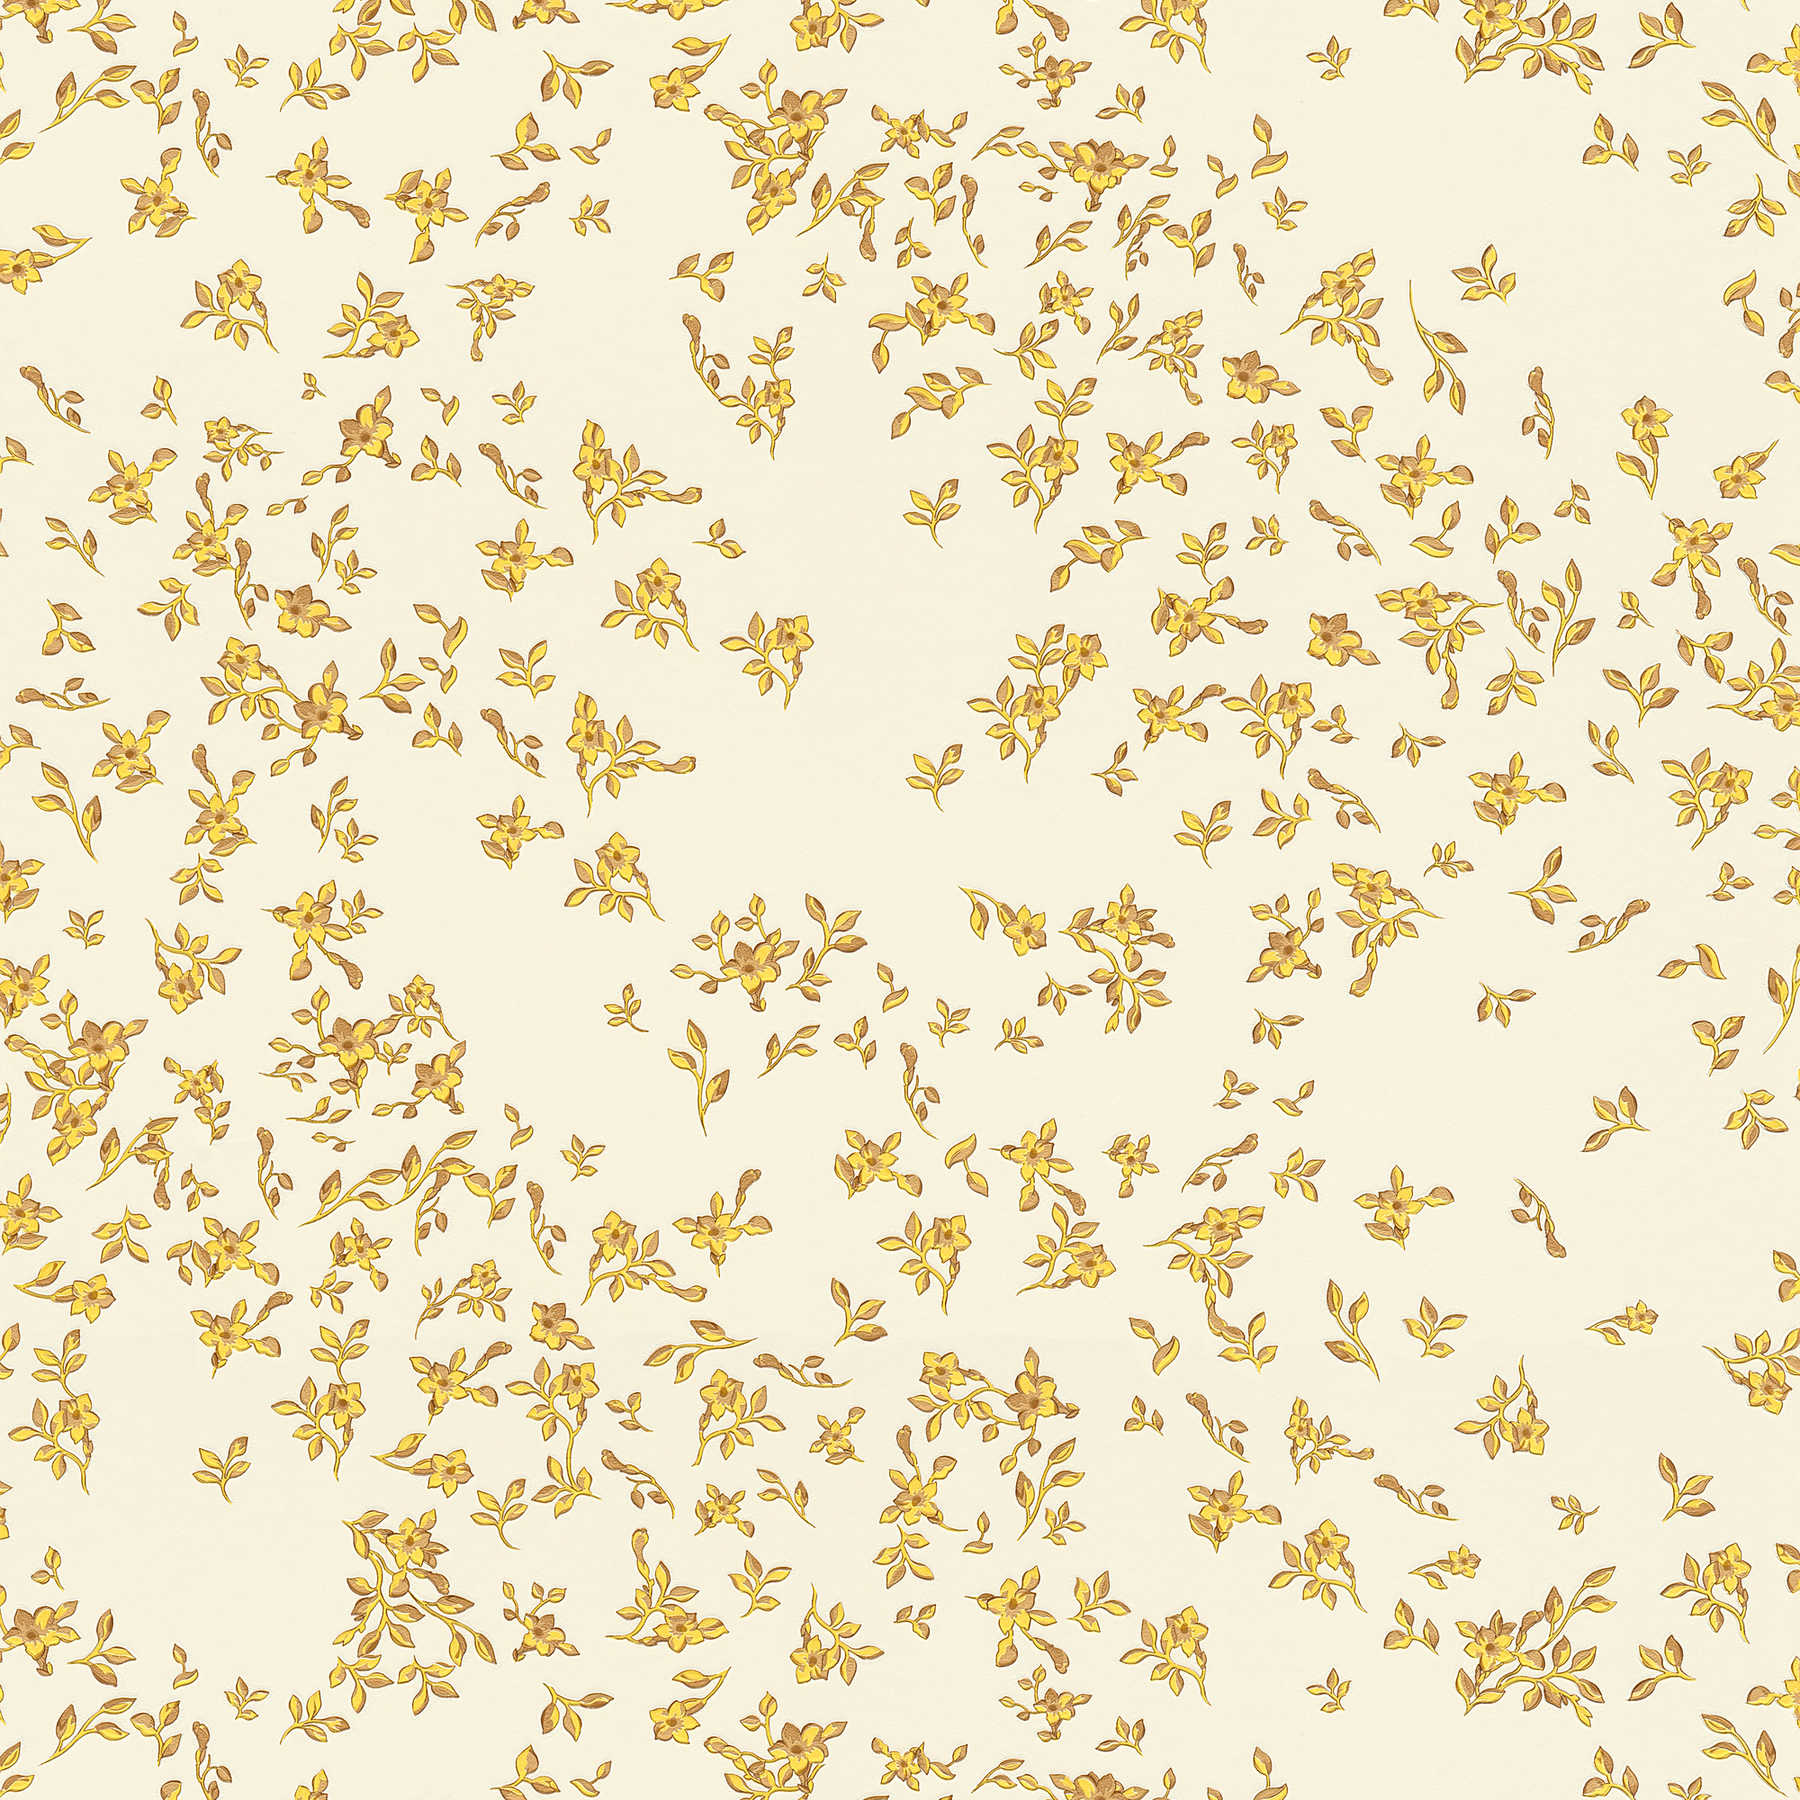         VERSACE Tapete mit feinen goldenen Blümchen – Gold, Gelb, Beige
    